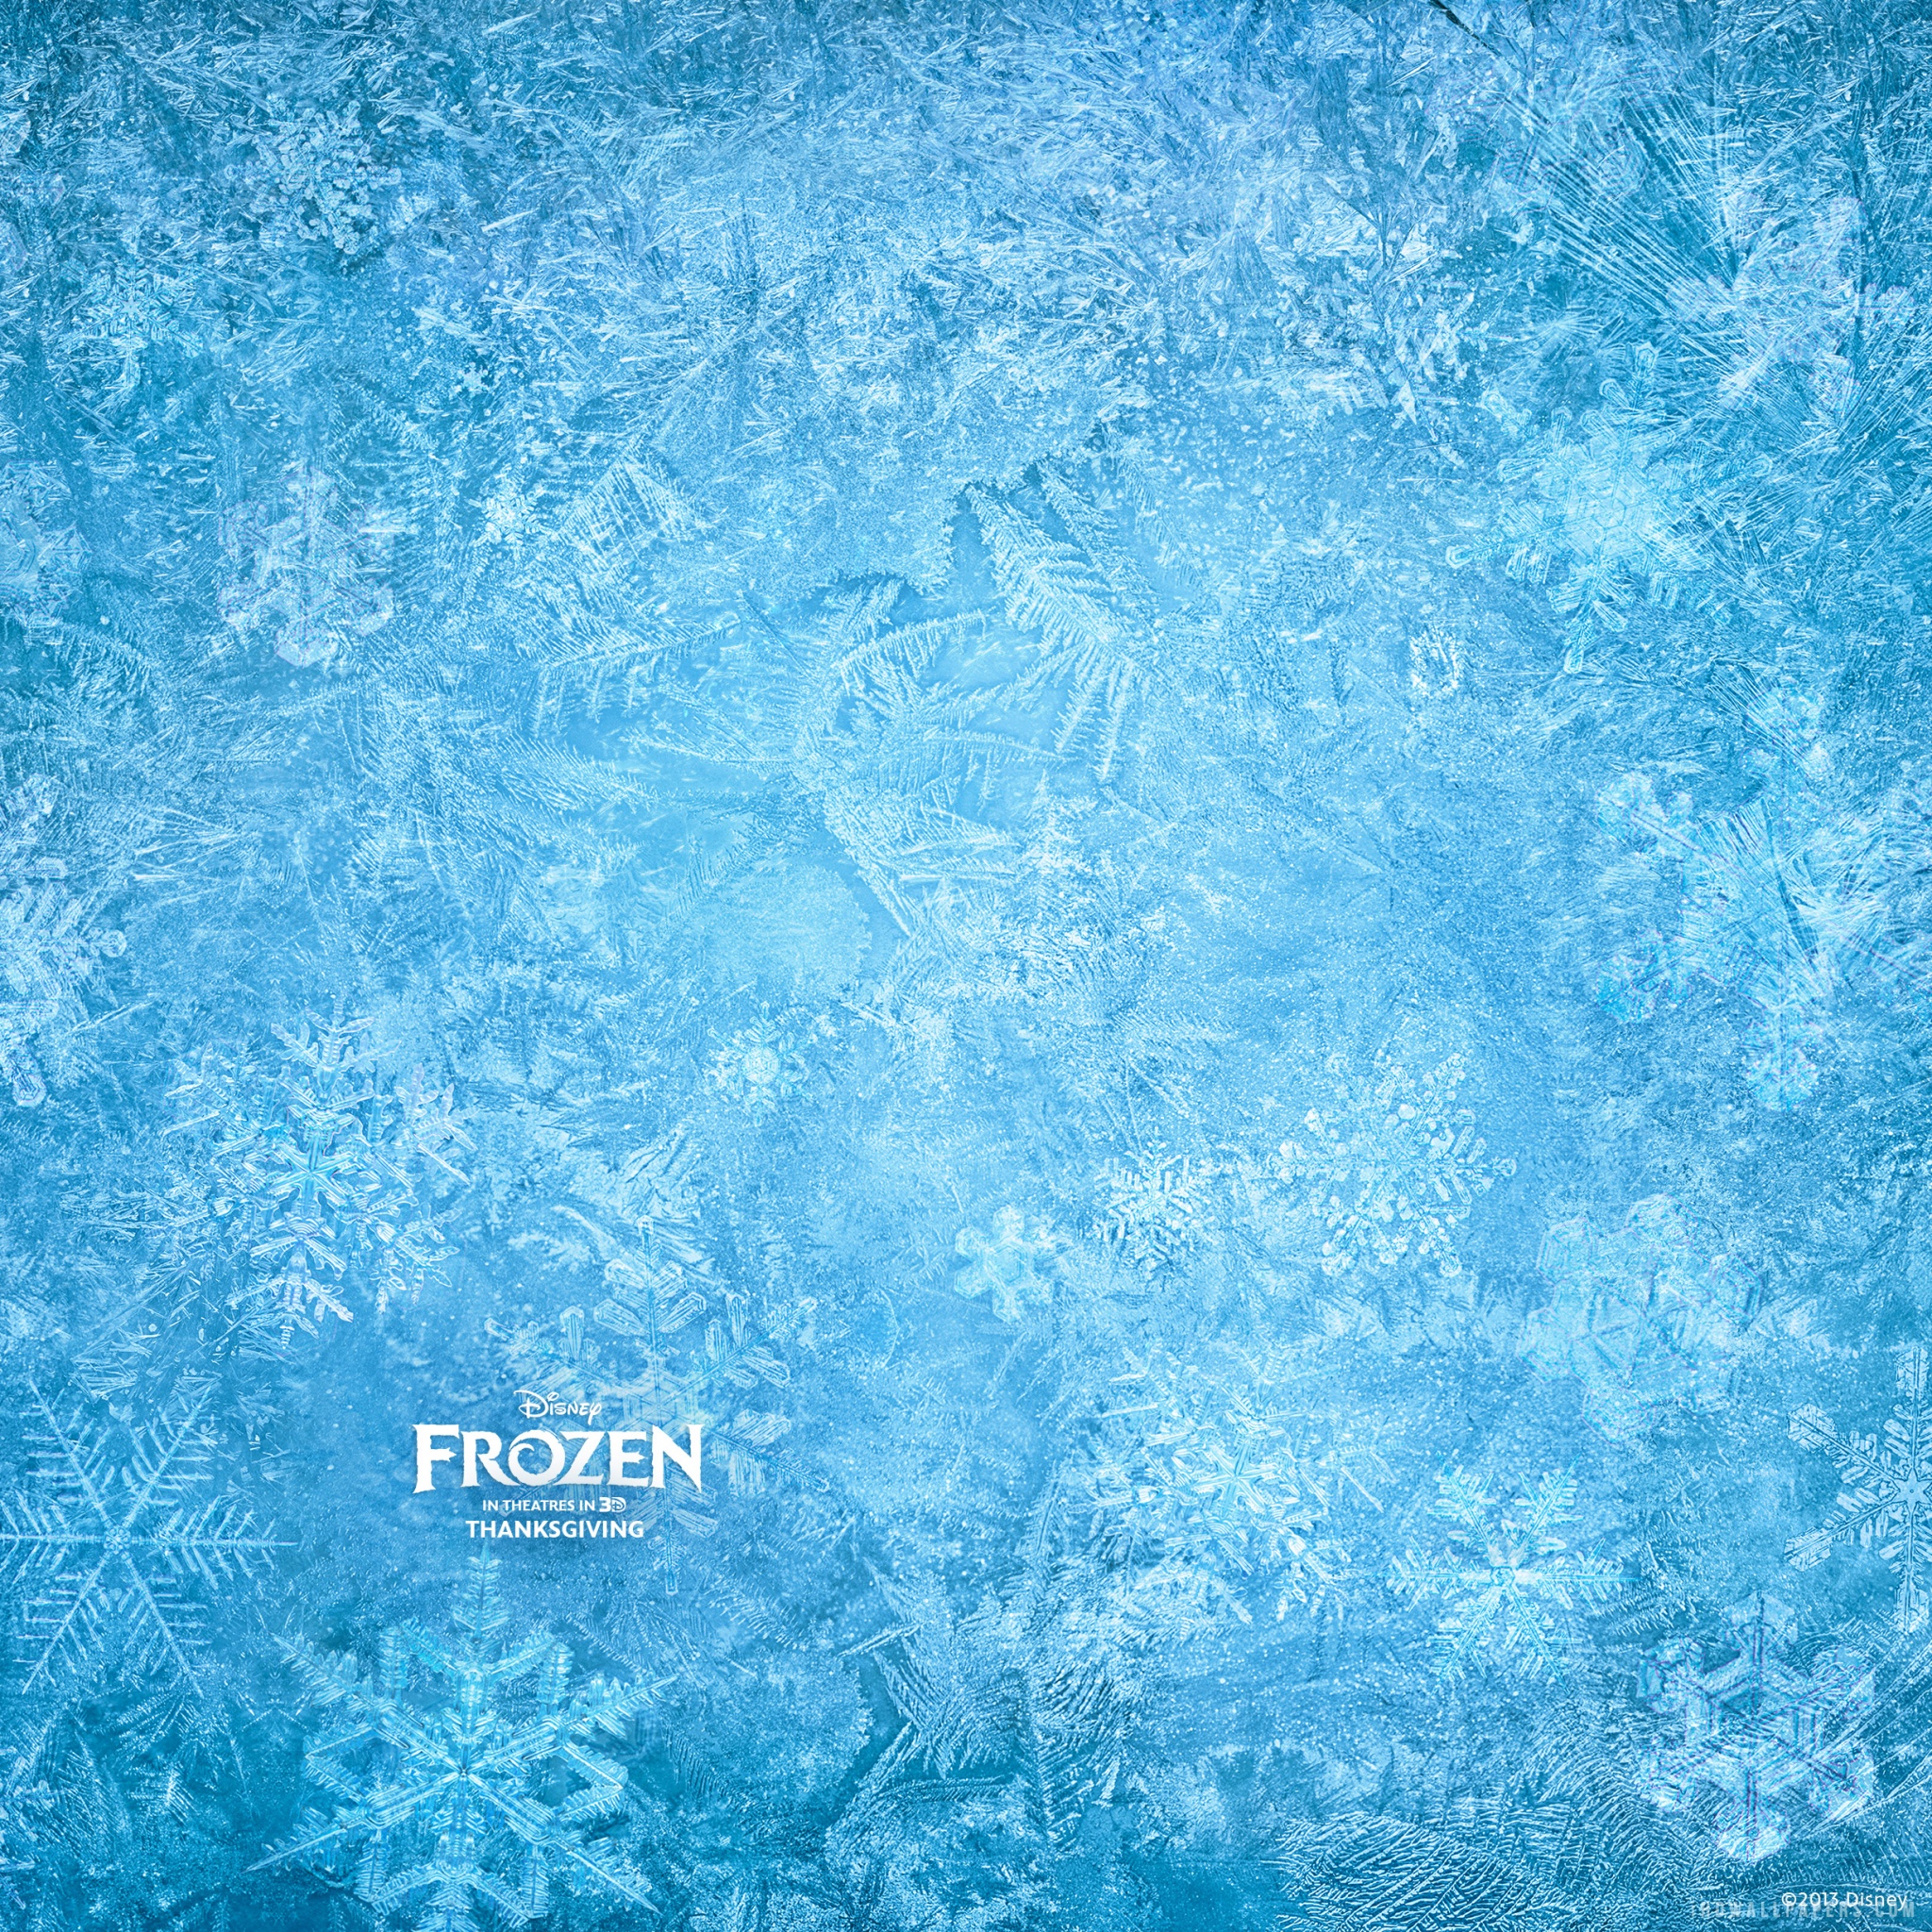 Frozen Ice HD Wallpaper   iHD Wallpapers